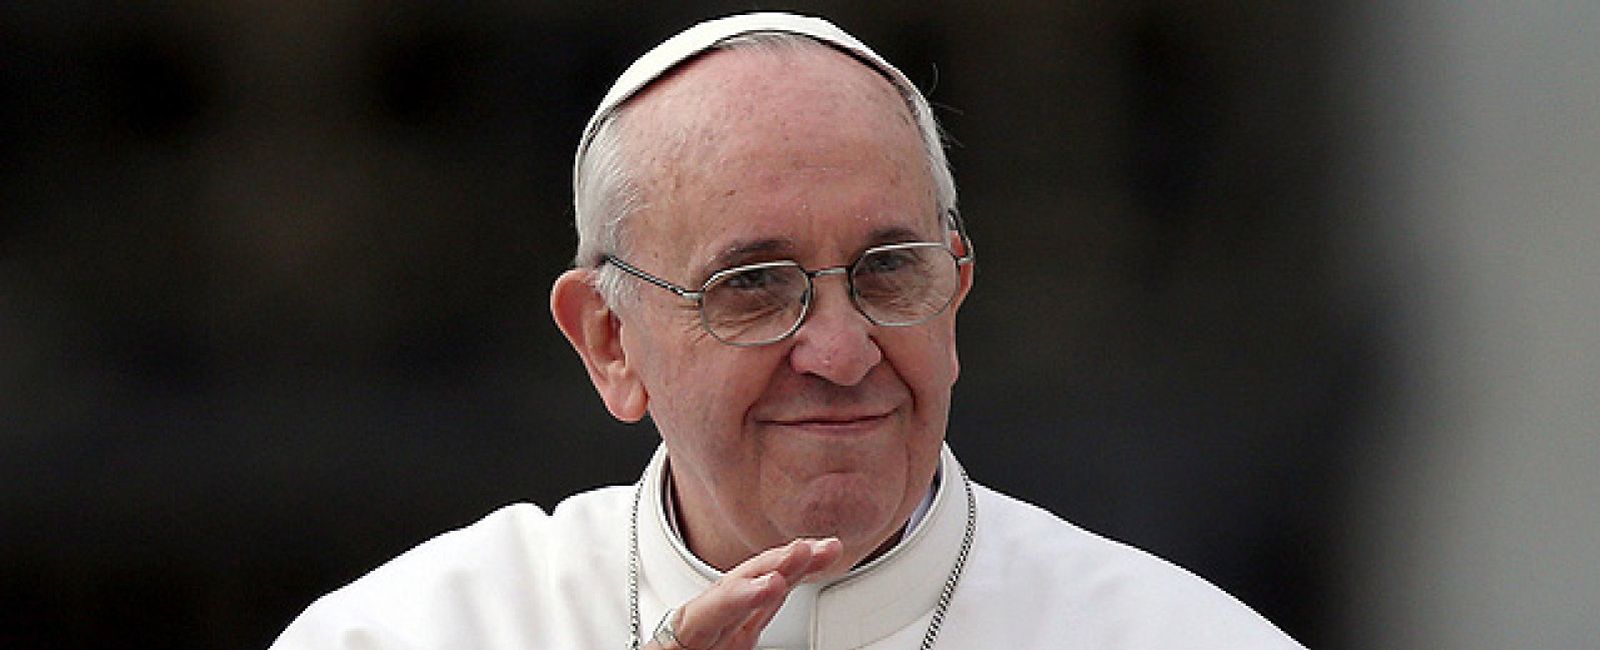 Foto: Consigue el perdón de los pecados a cambio de un 'follow' al Papa